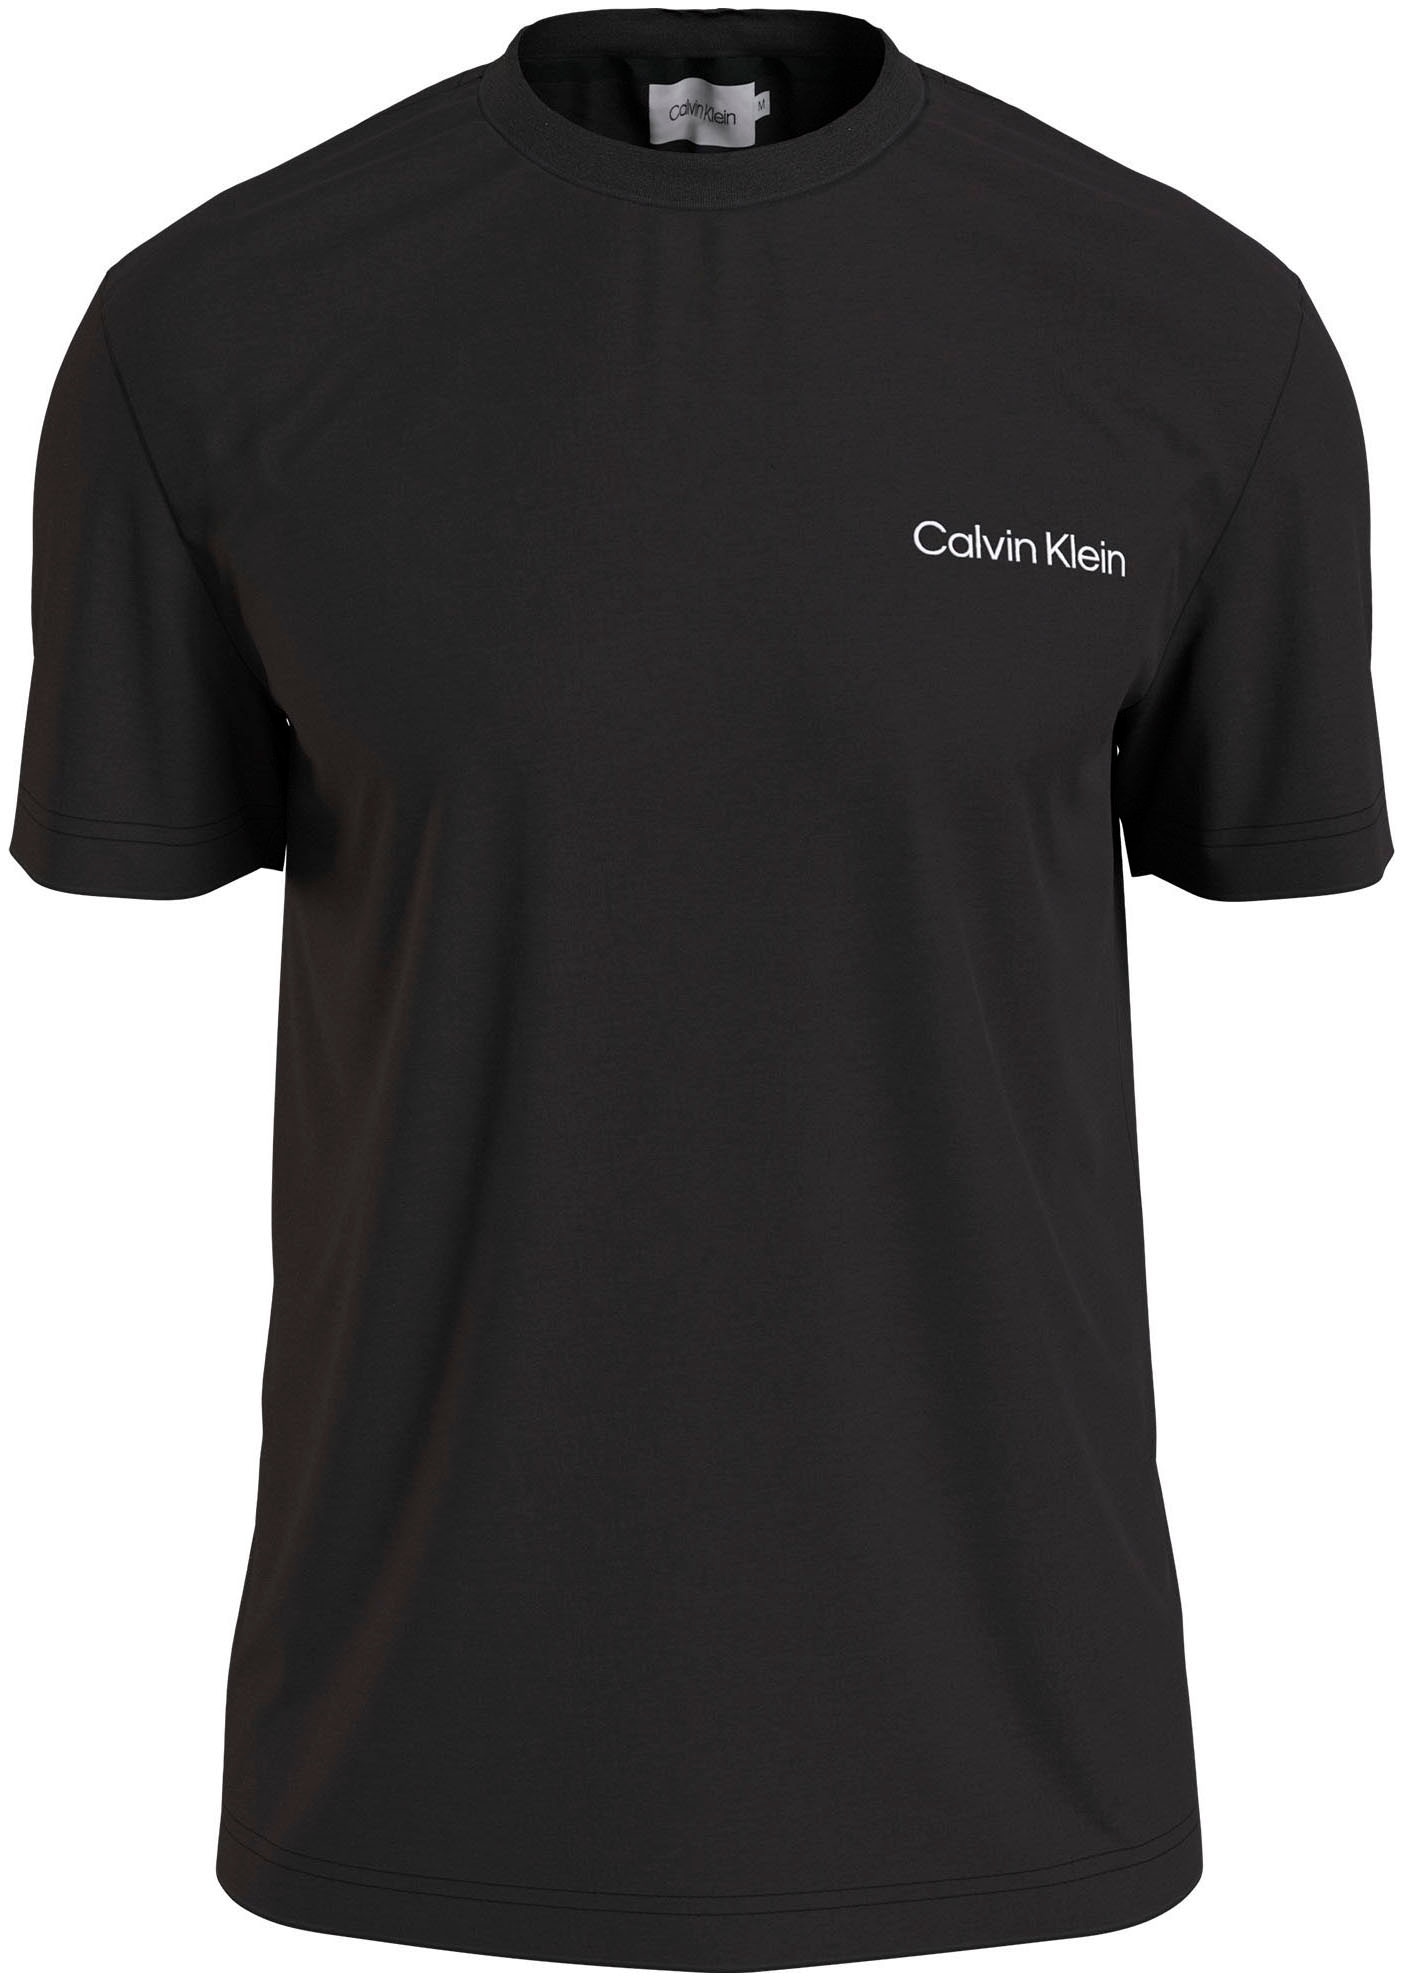 Calvin Klein T-Shirt »ANGLED BACK LOGO T-SHIRT« von Calvin Klein